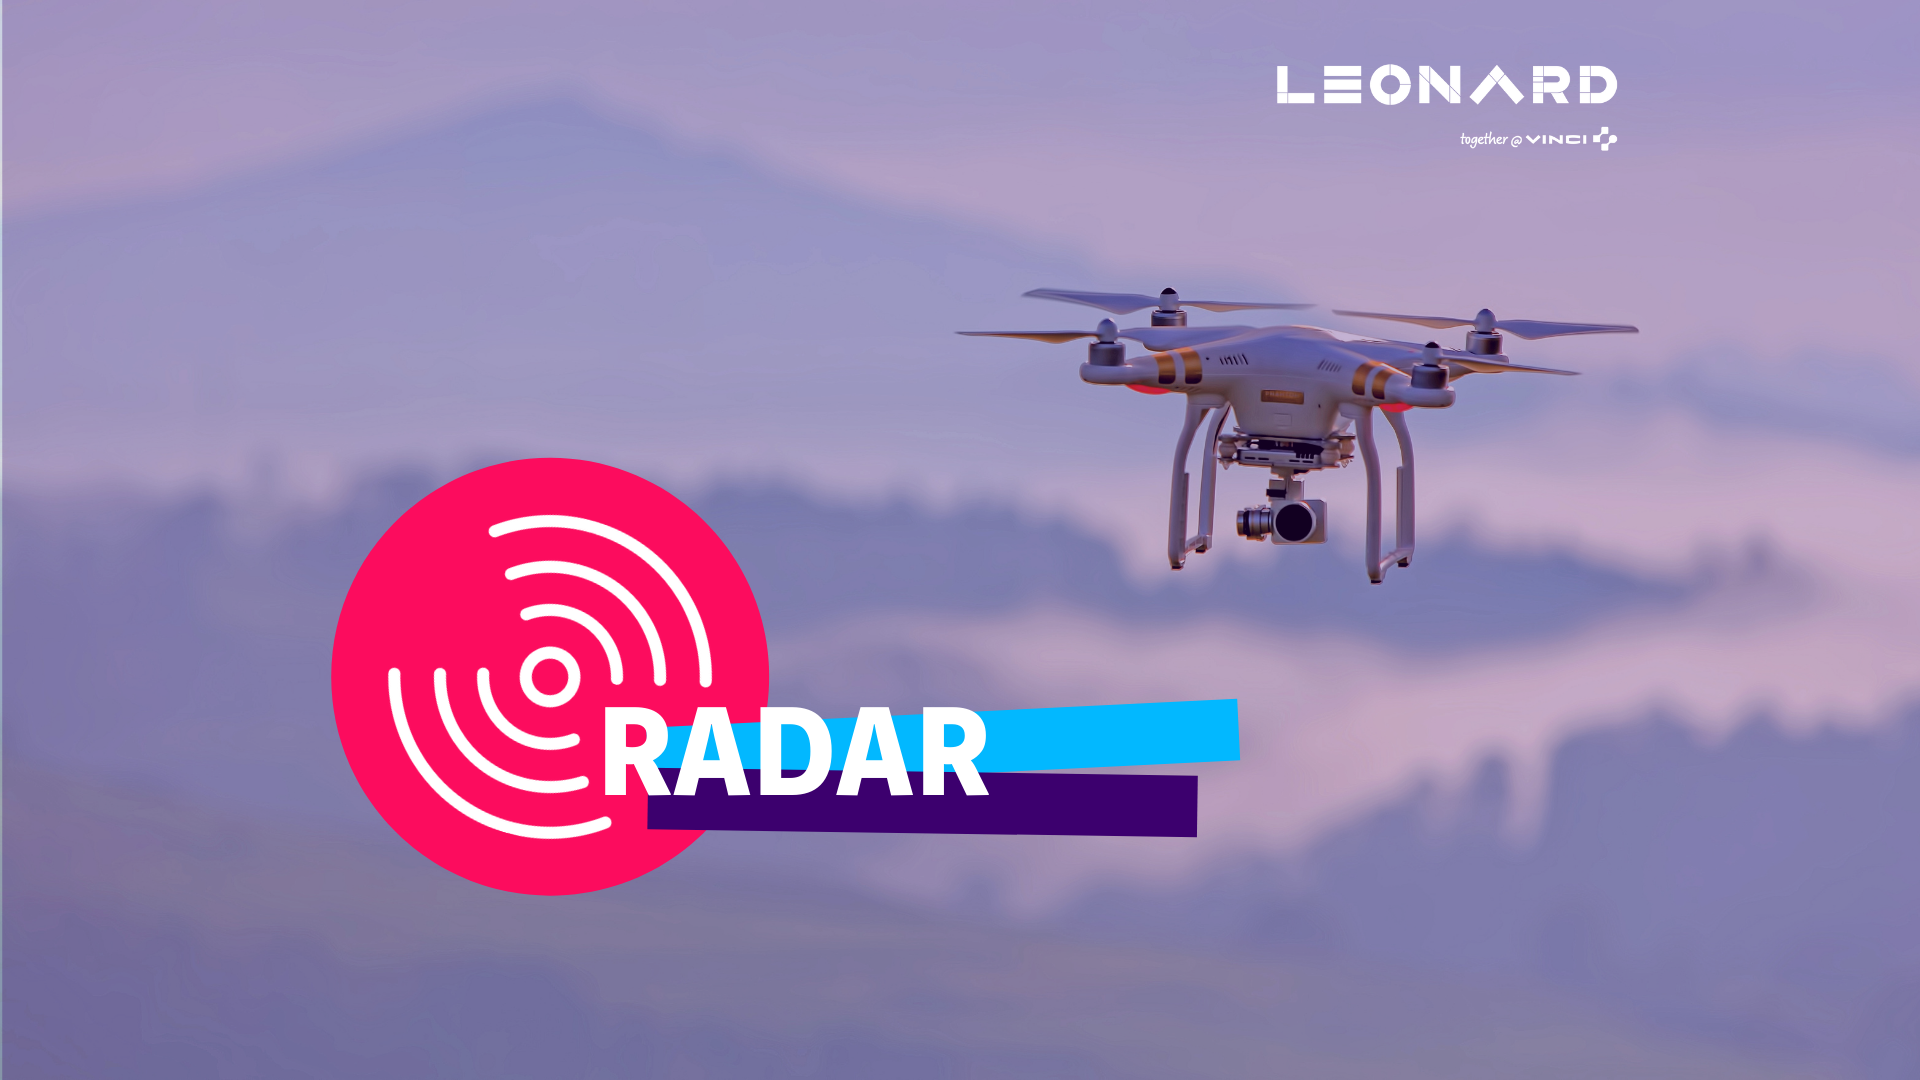 Radar – Notre sélection de business innovants #53